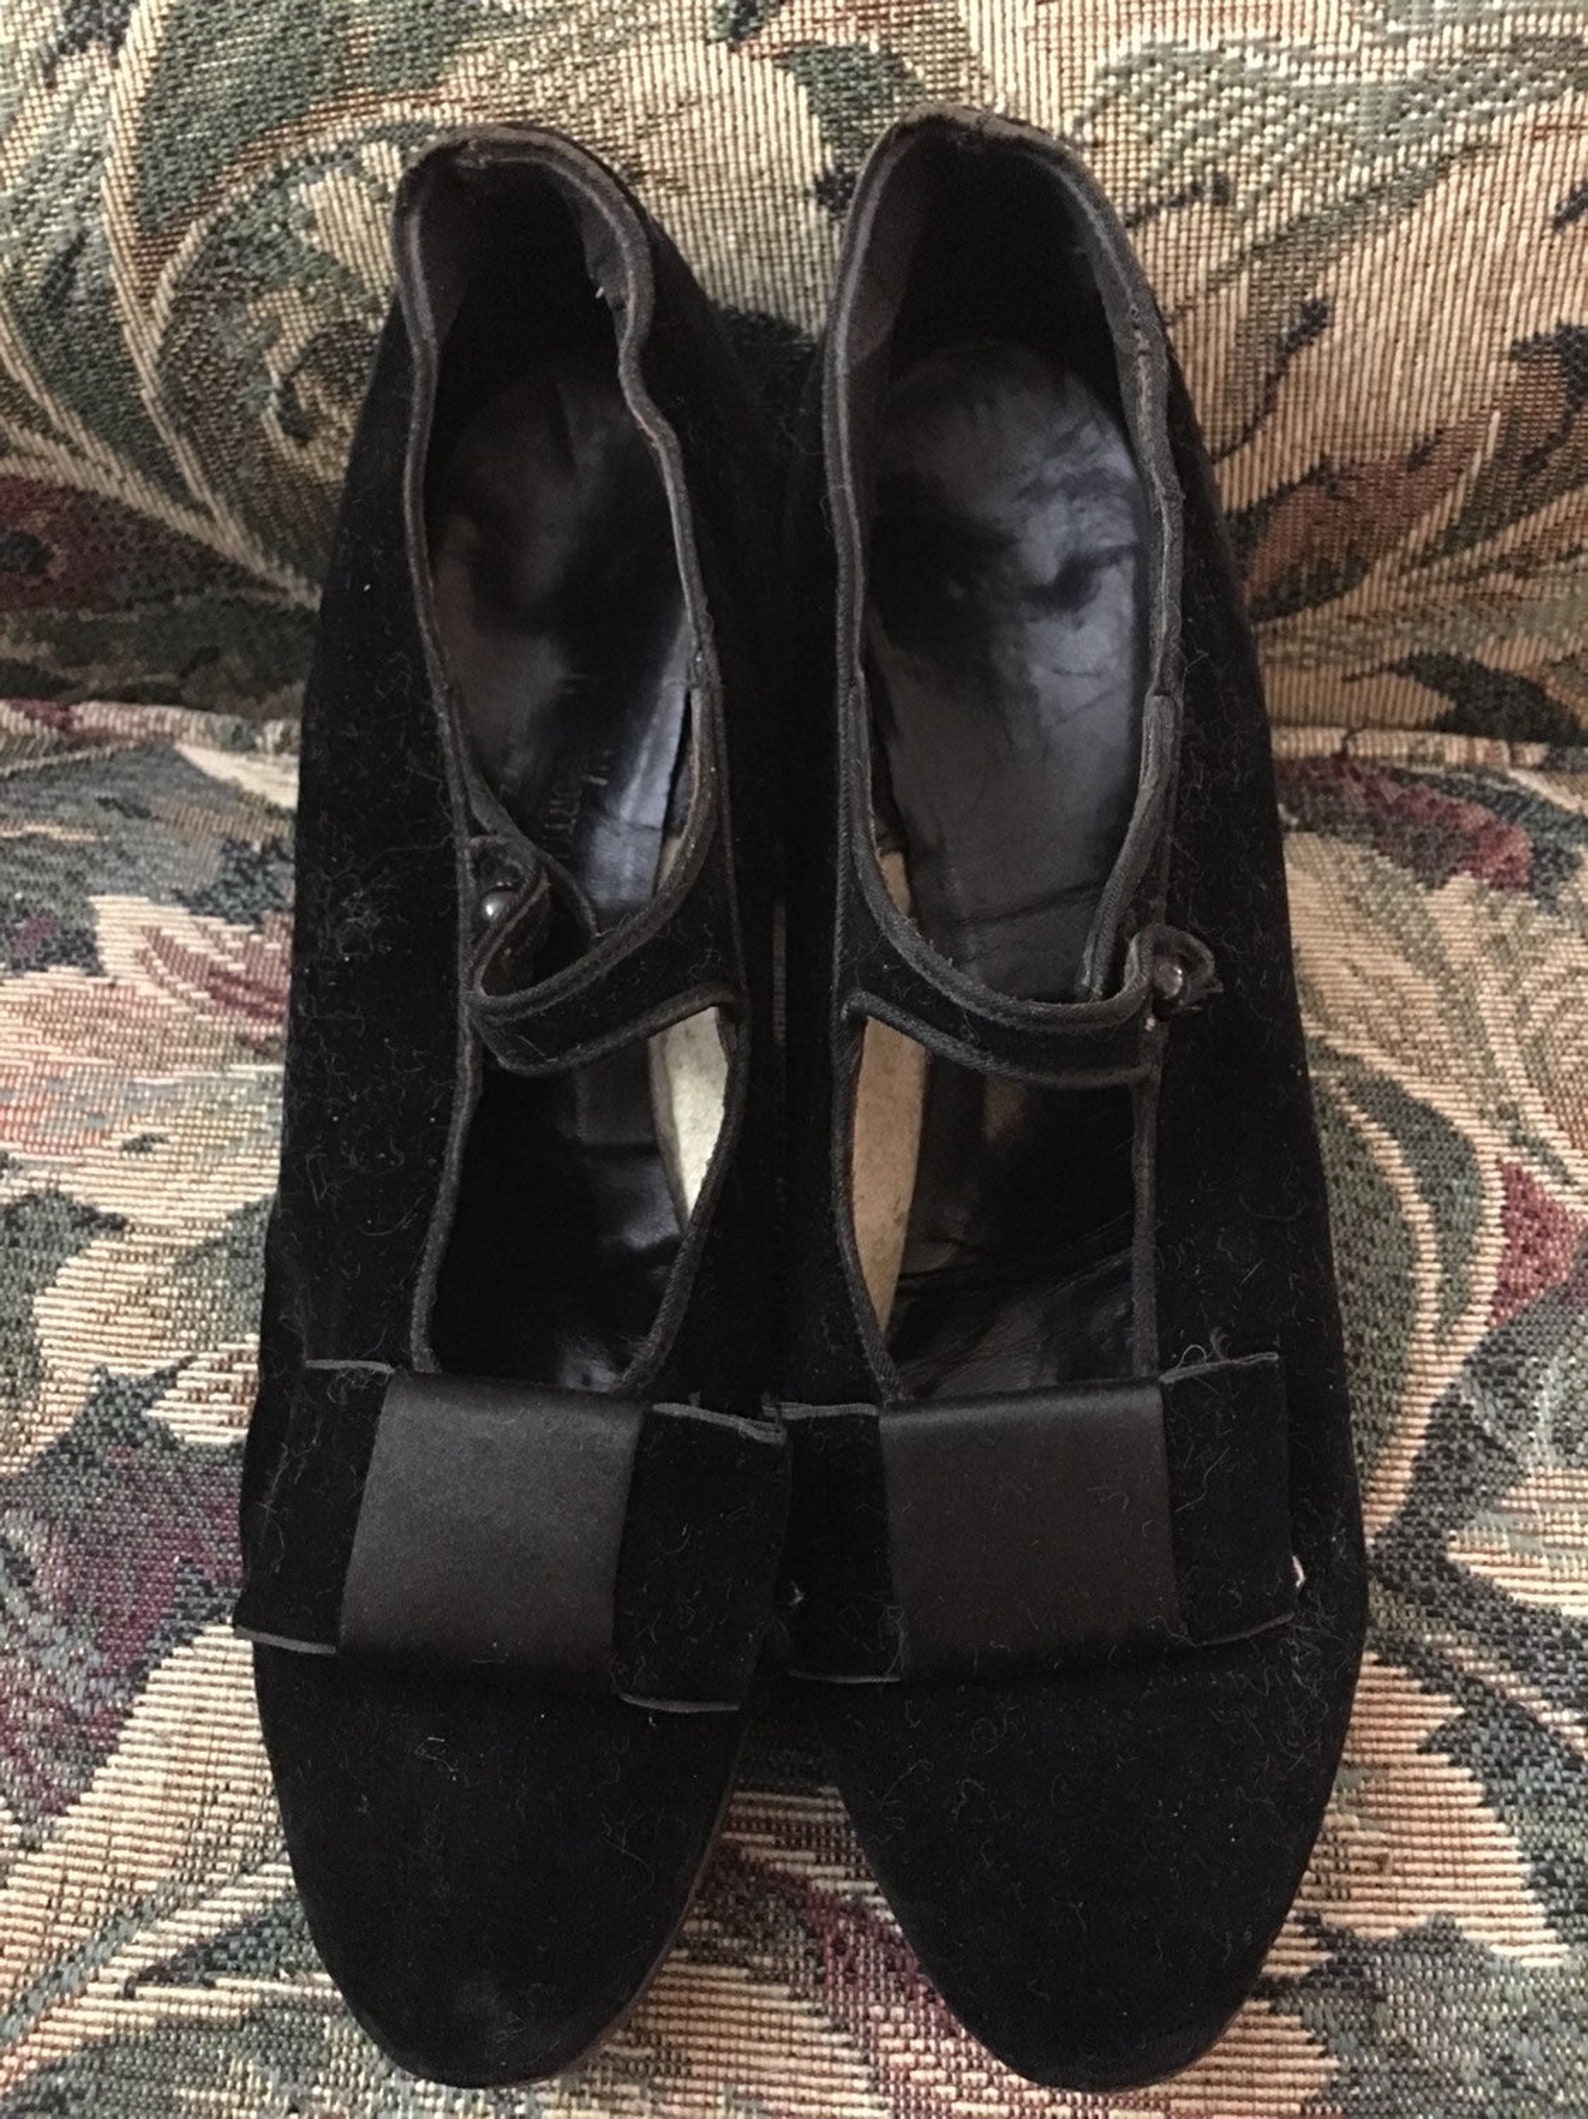 Vintage black velvet dance shoes from the 1900's | Etsy